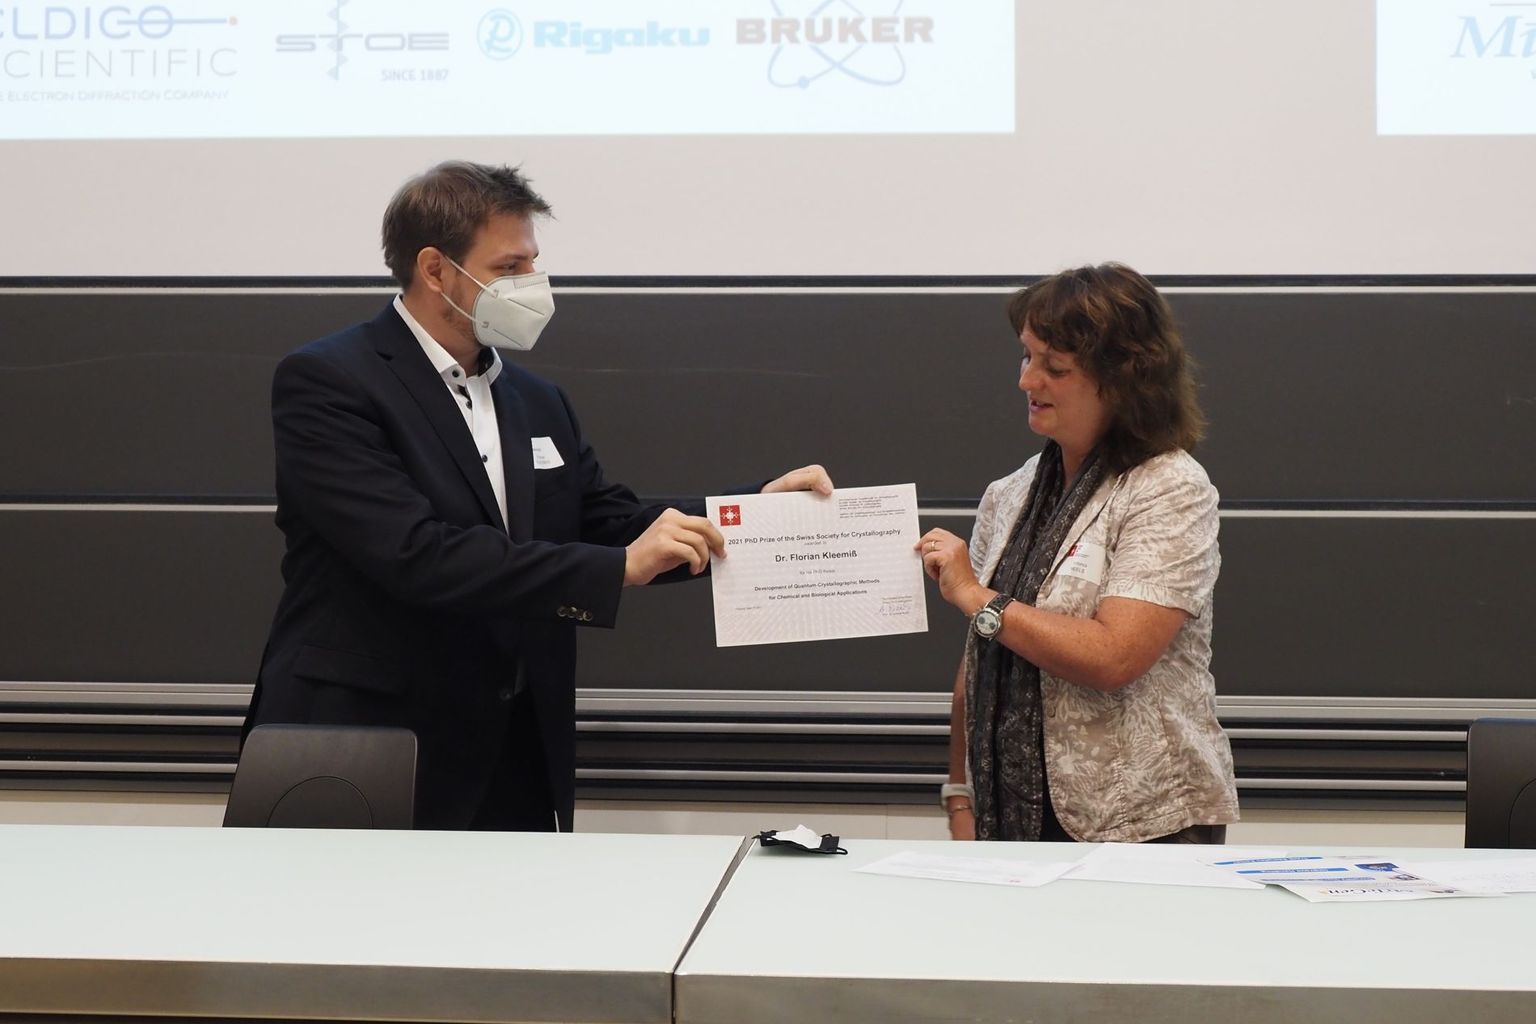 De 2018 à 2021, Antonia Neels a été présidente de la Société suisse de cristallographie (SSC). Photo: lors de la remise du prix de doctorat 2021 de la SSC à Florian Kleemiss.